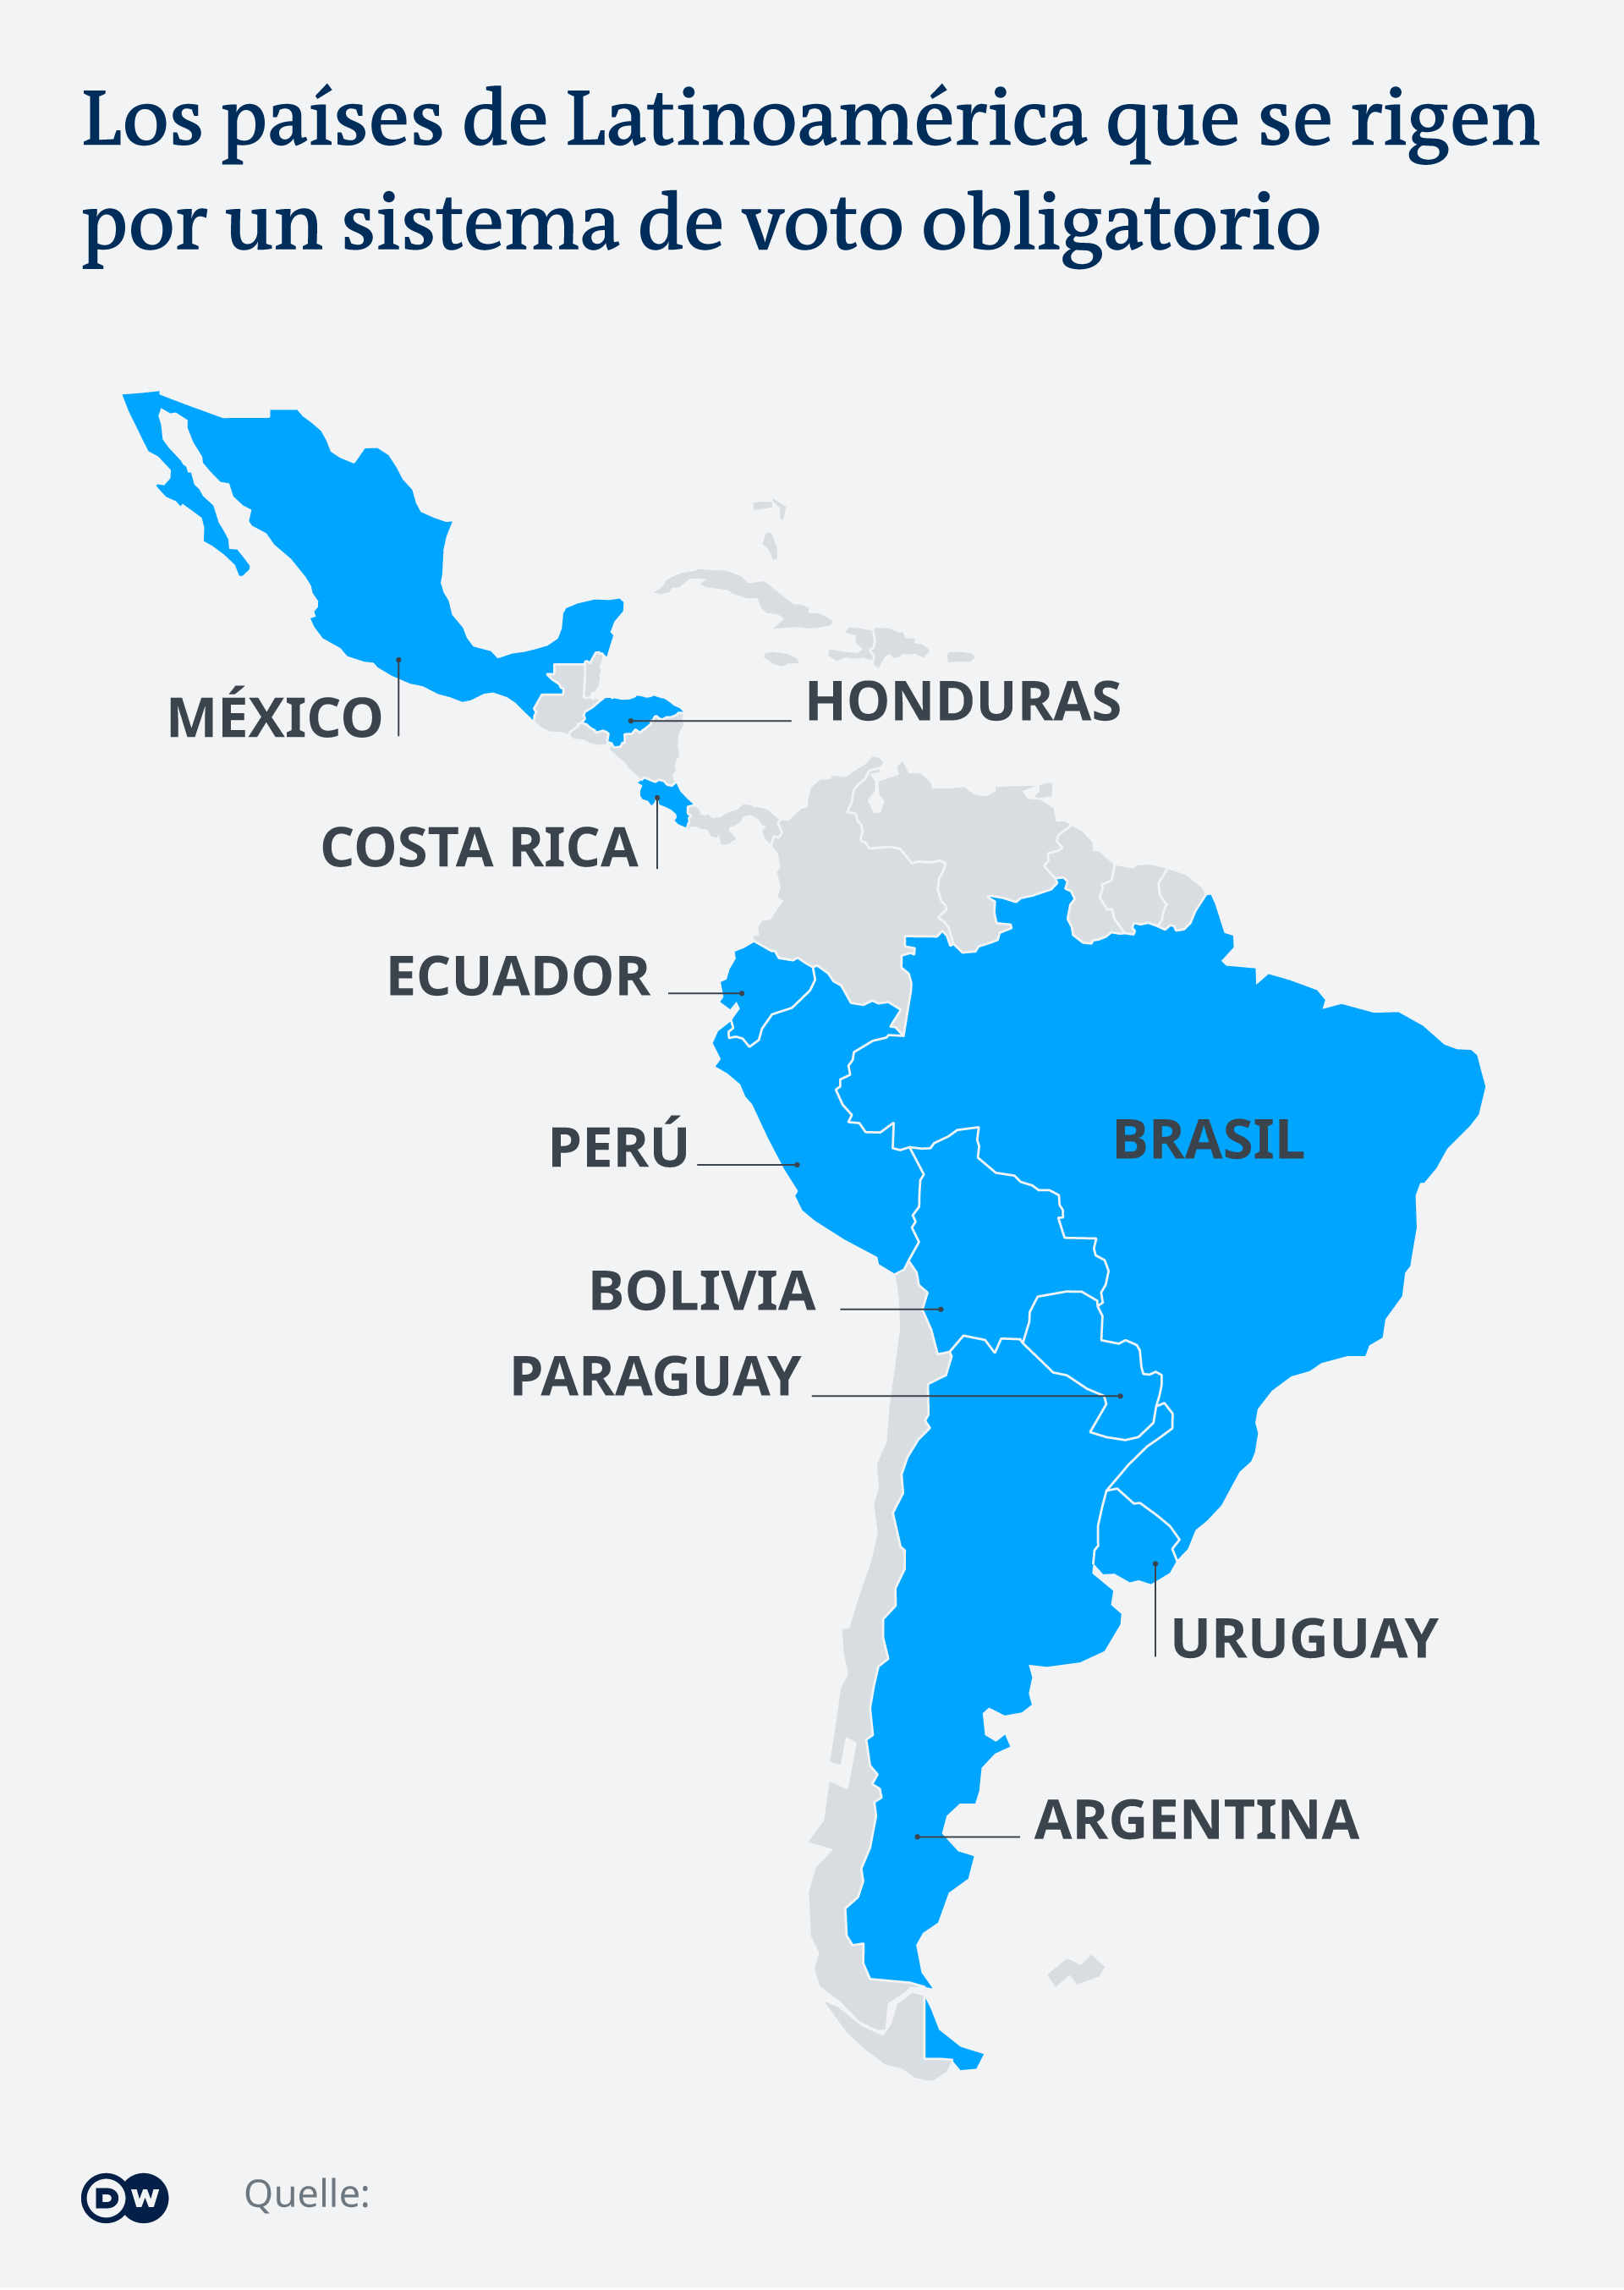 El mapa de Latinoamérica con aquellos países con voto obligatorio.